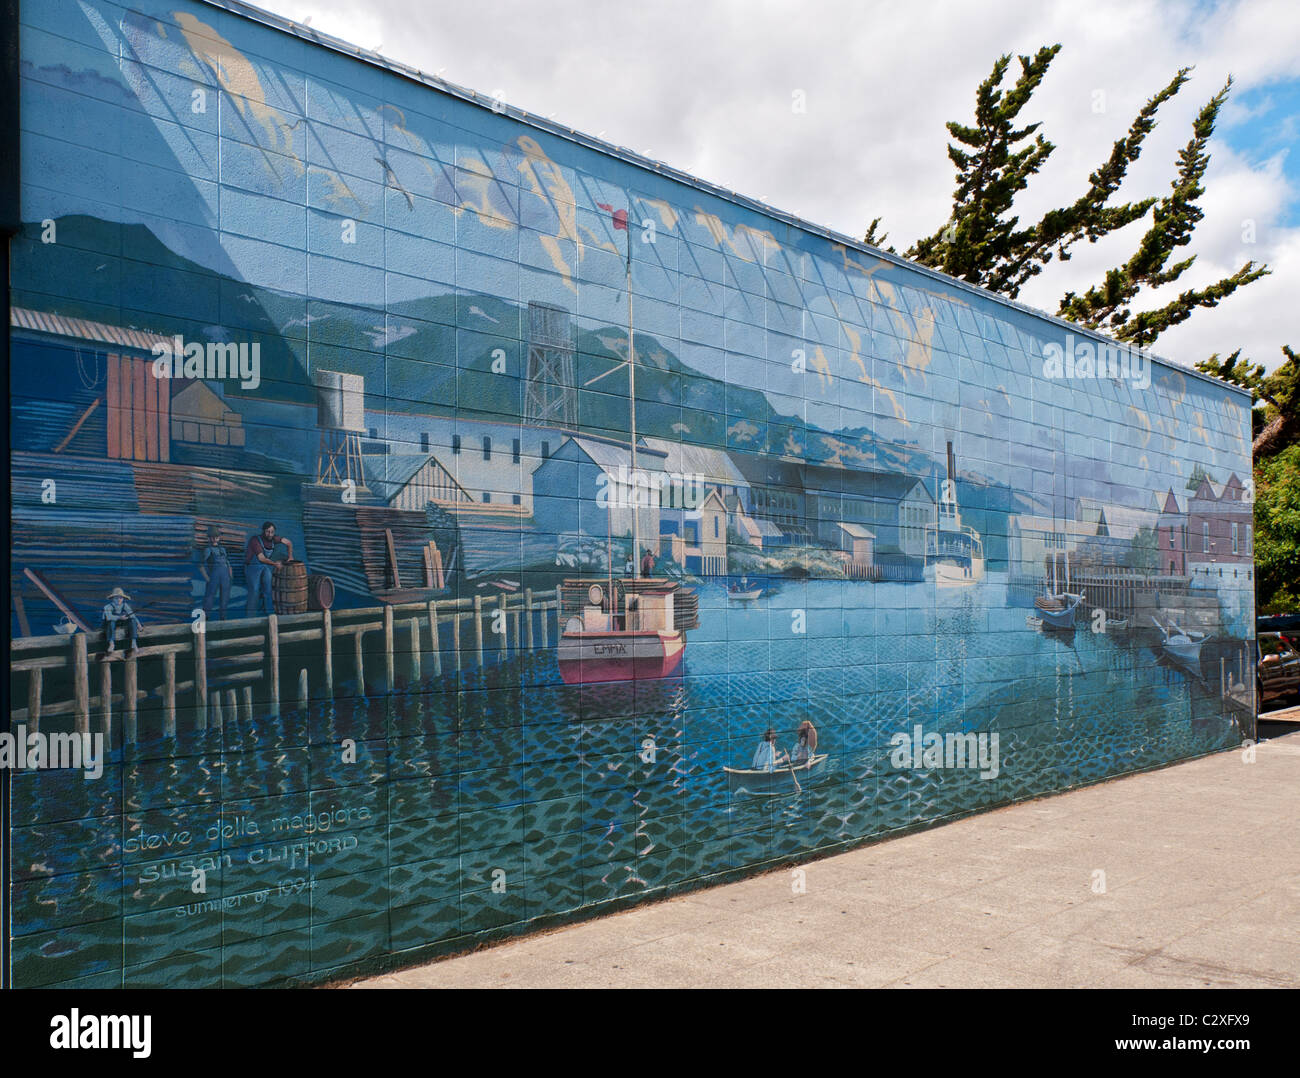 California, Napa, Downtown progetto murale, murale #1 il fiume Napa Foto Stock